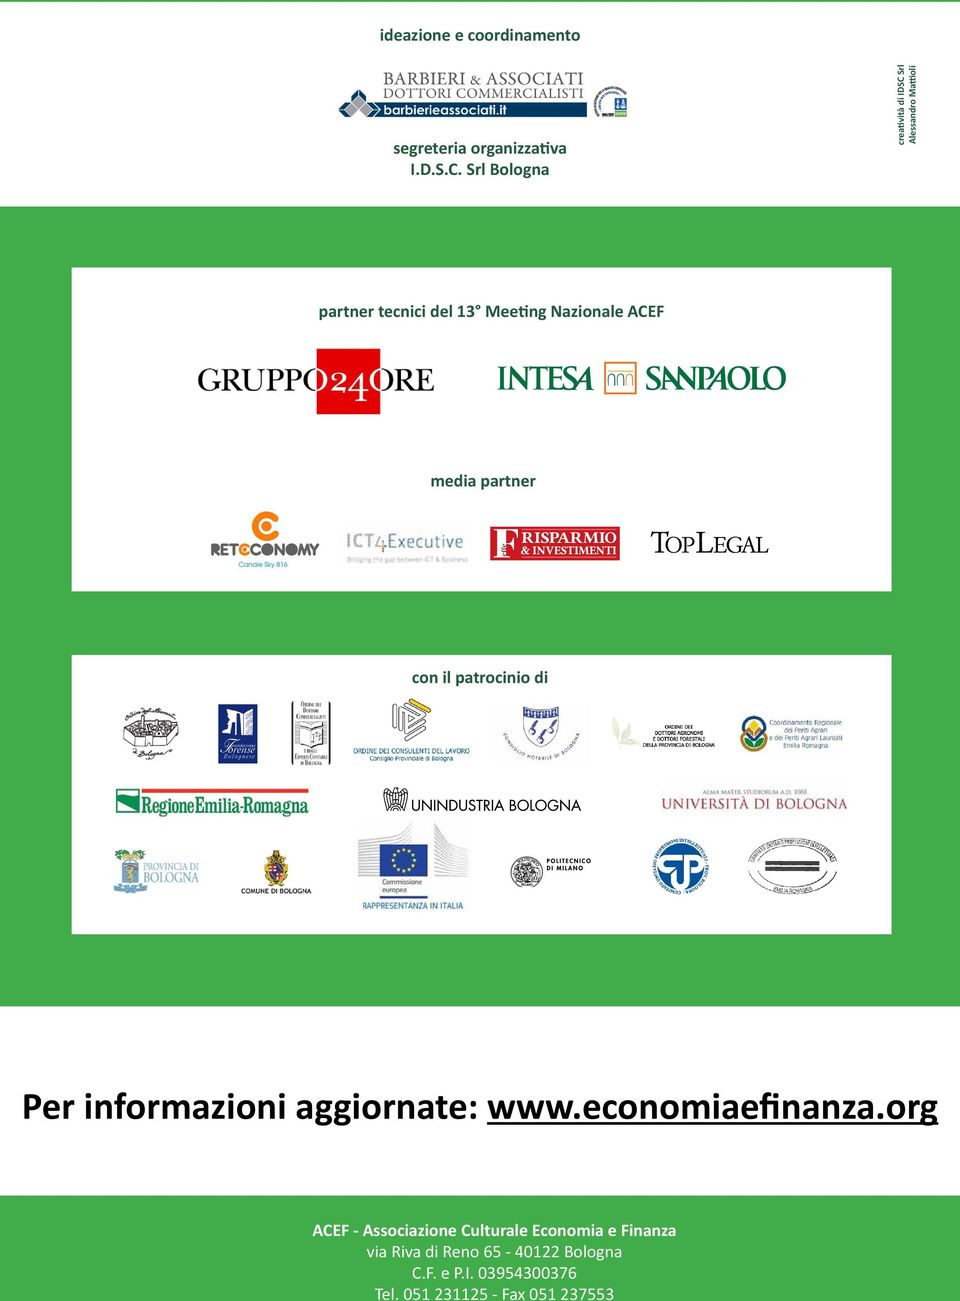 patrocinio di ACEF - Associazione Culturale Economia e Finanza via Riva di Reno 65-40122 Bologna C.F. e P.I. 03954300376 Tel.